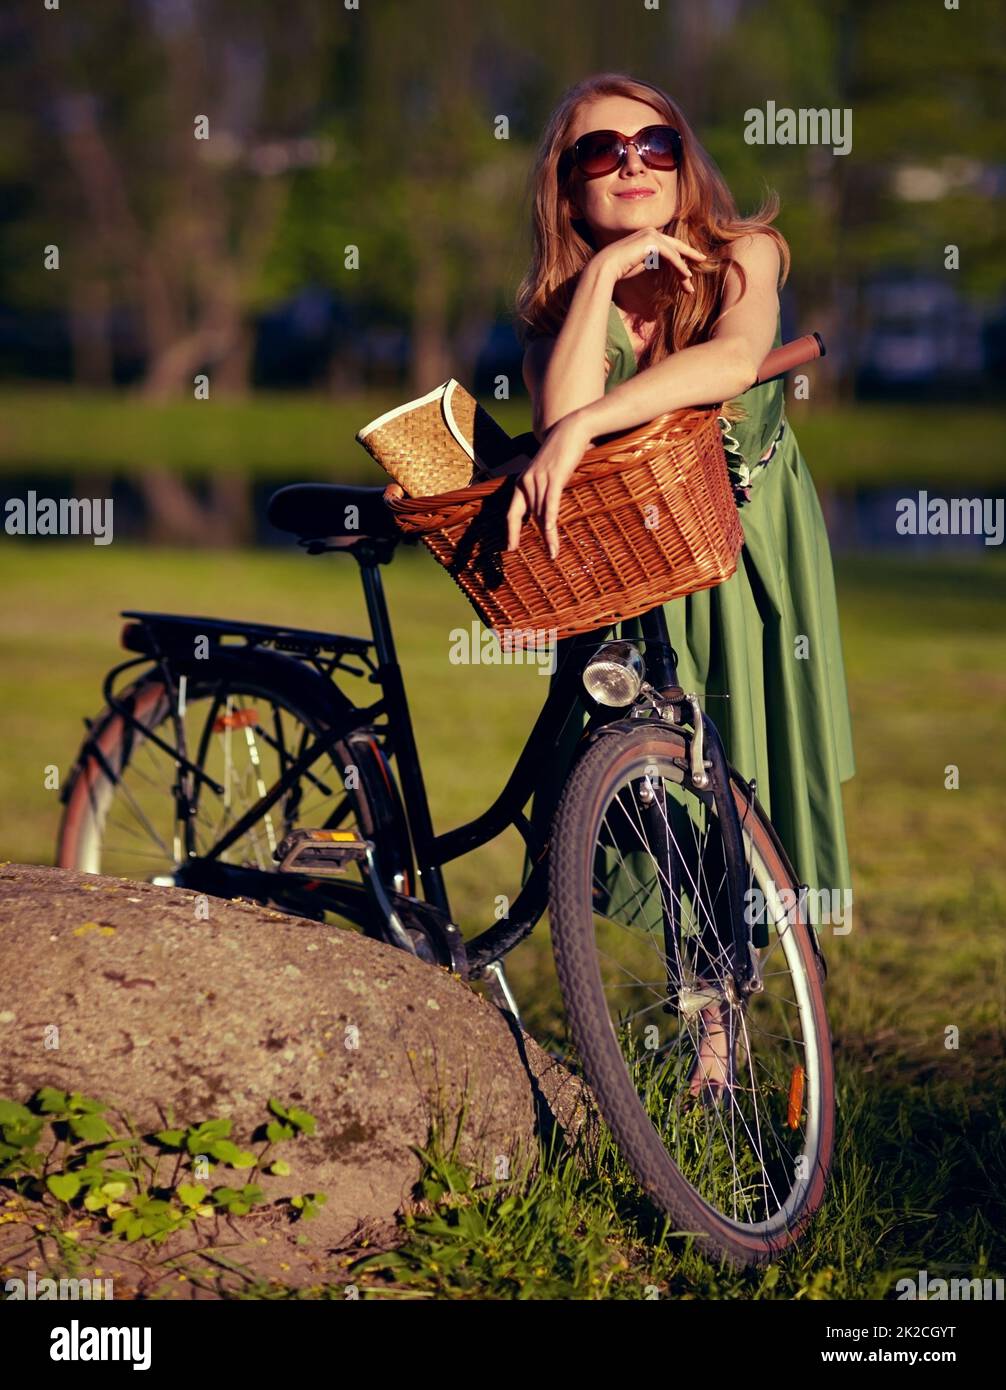 Prendre dans la tranquillité de la nature. Photo d'une belle jeune femme qui se détend dans le parc à côté de son vélo à l'ancienne. Banque D'Images